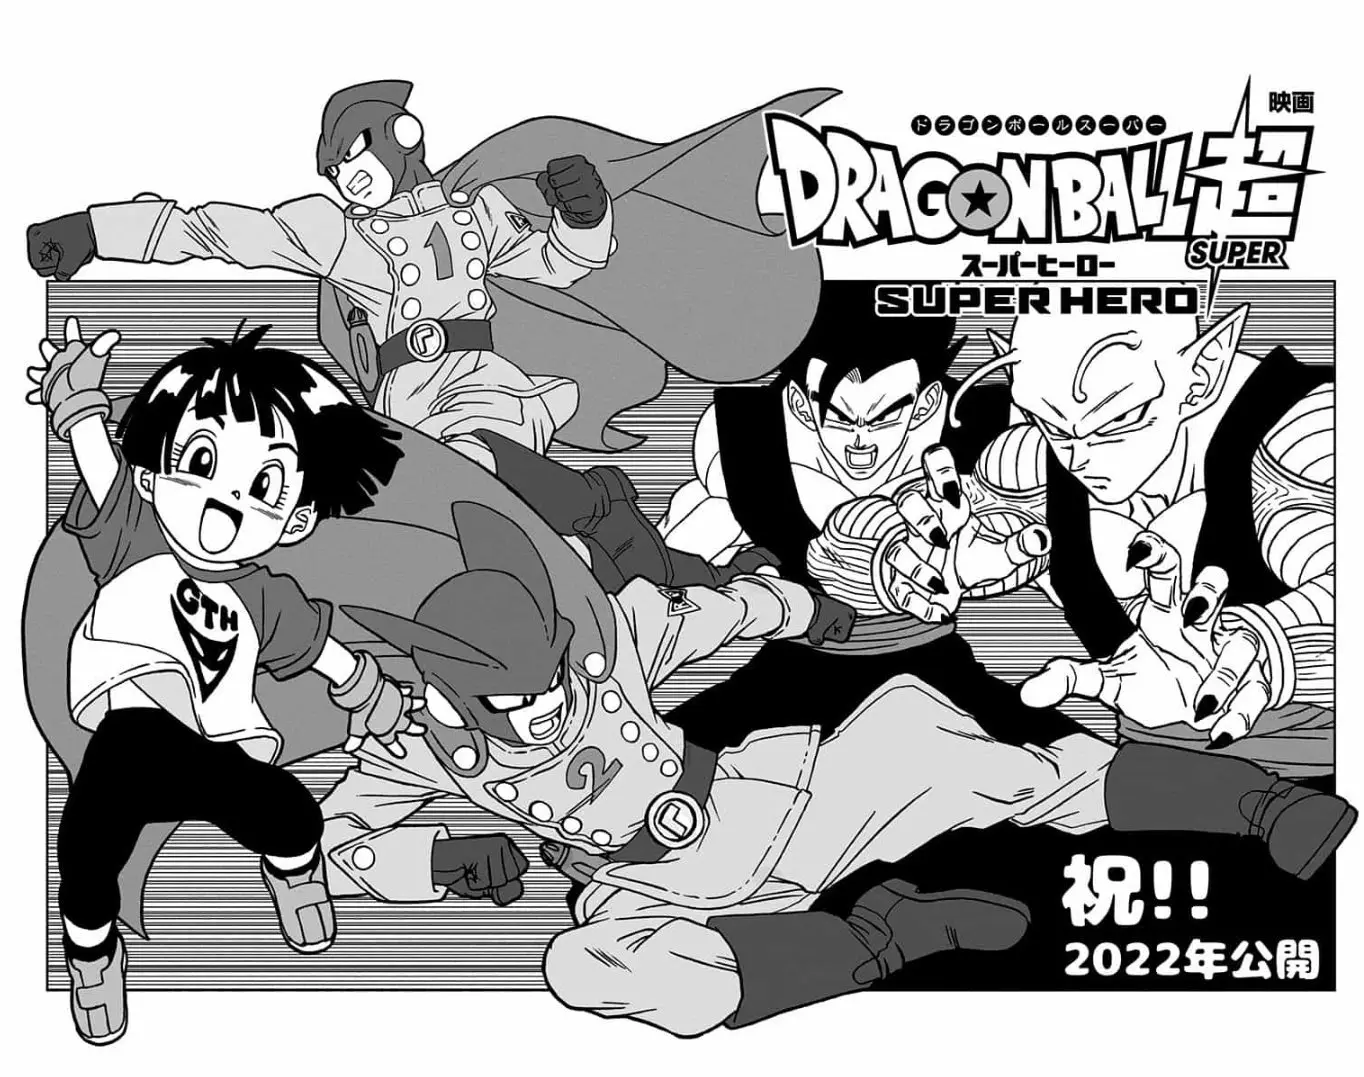 Dragon Ball Super: Ya disponible el capítulo 93 del manga en español